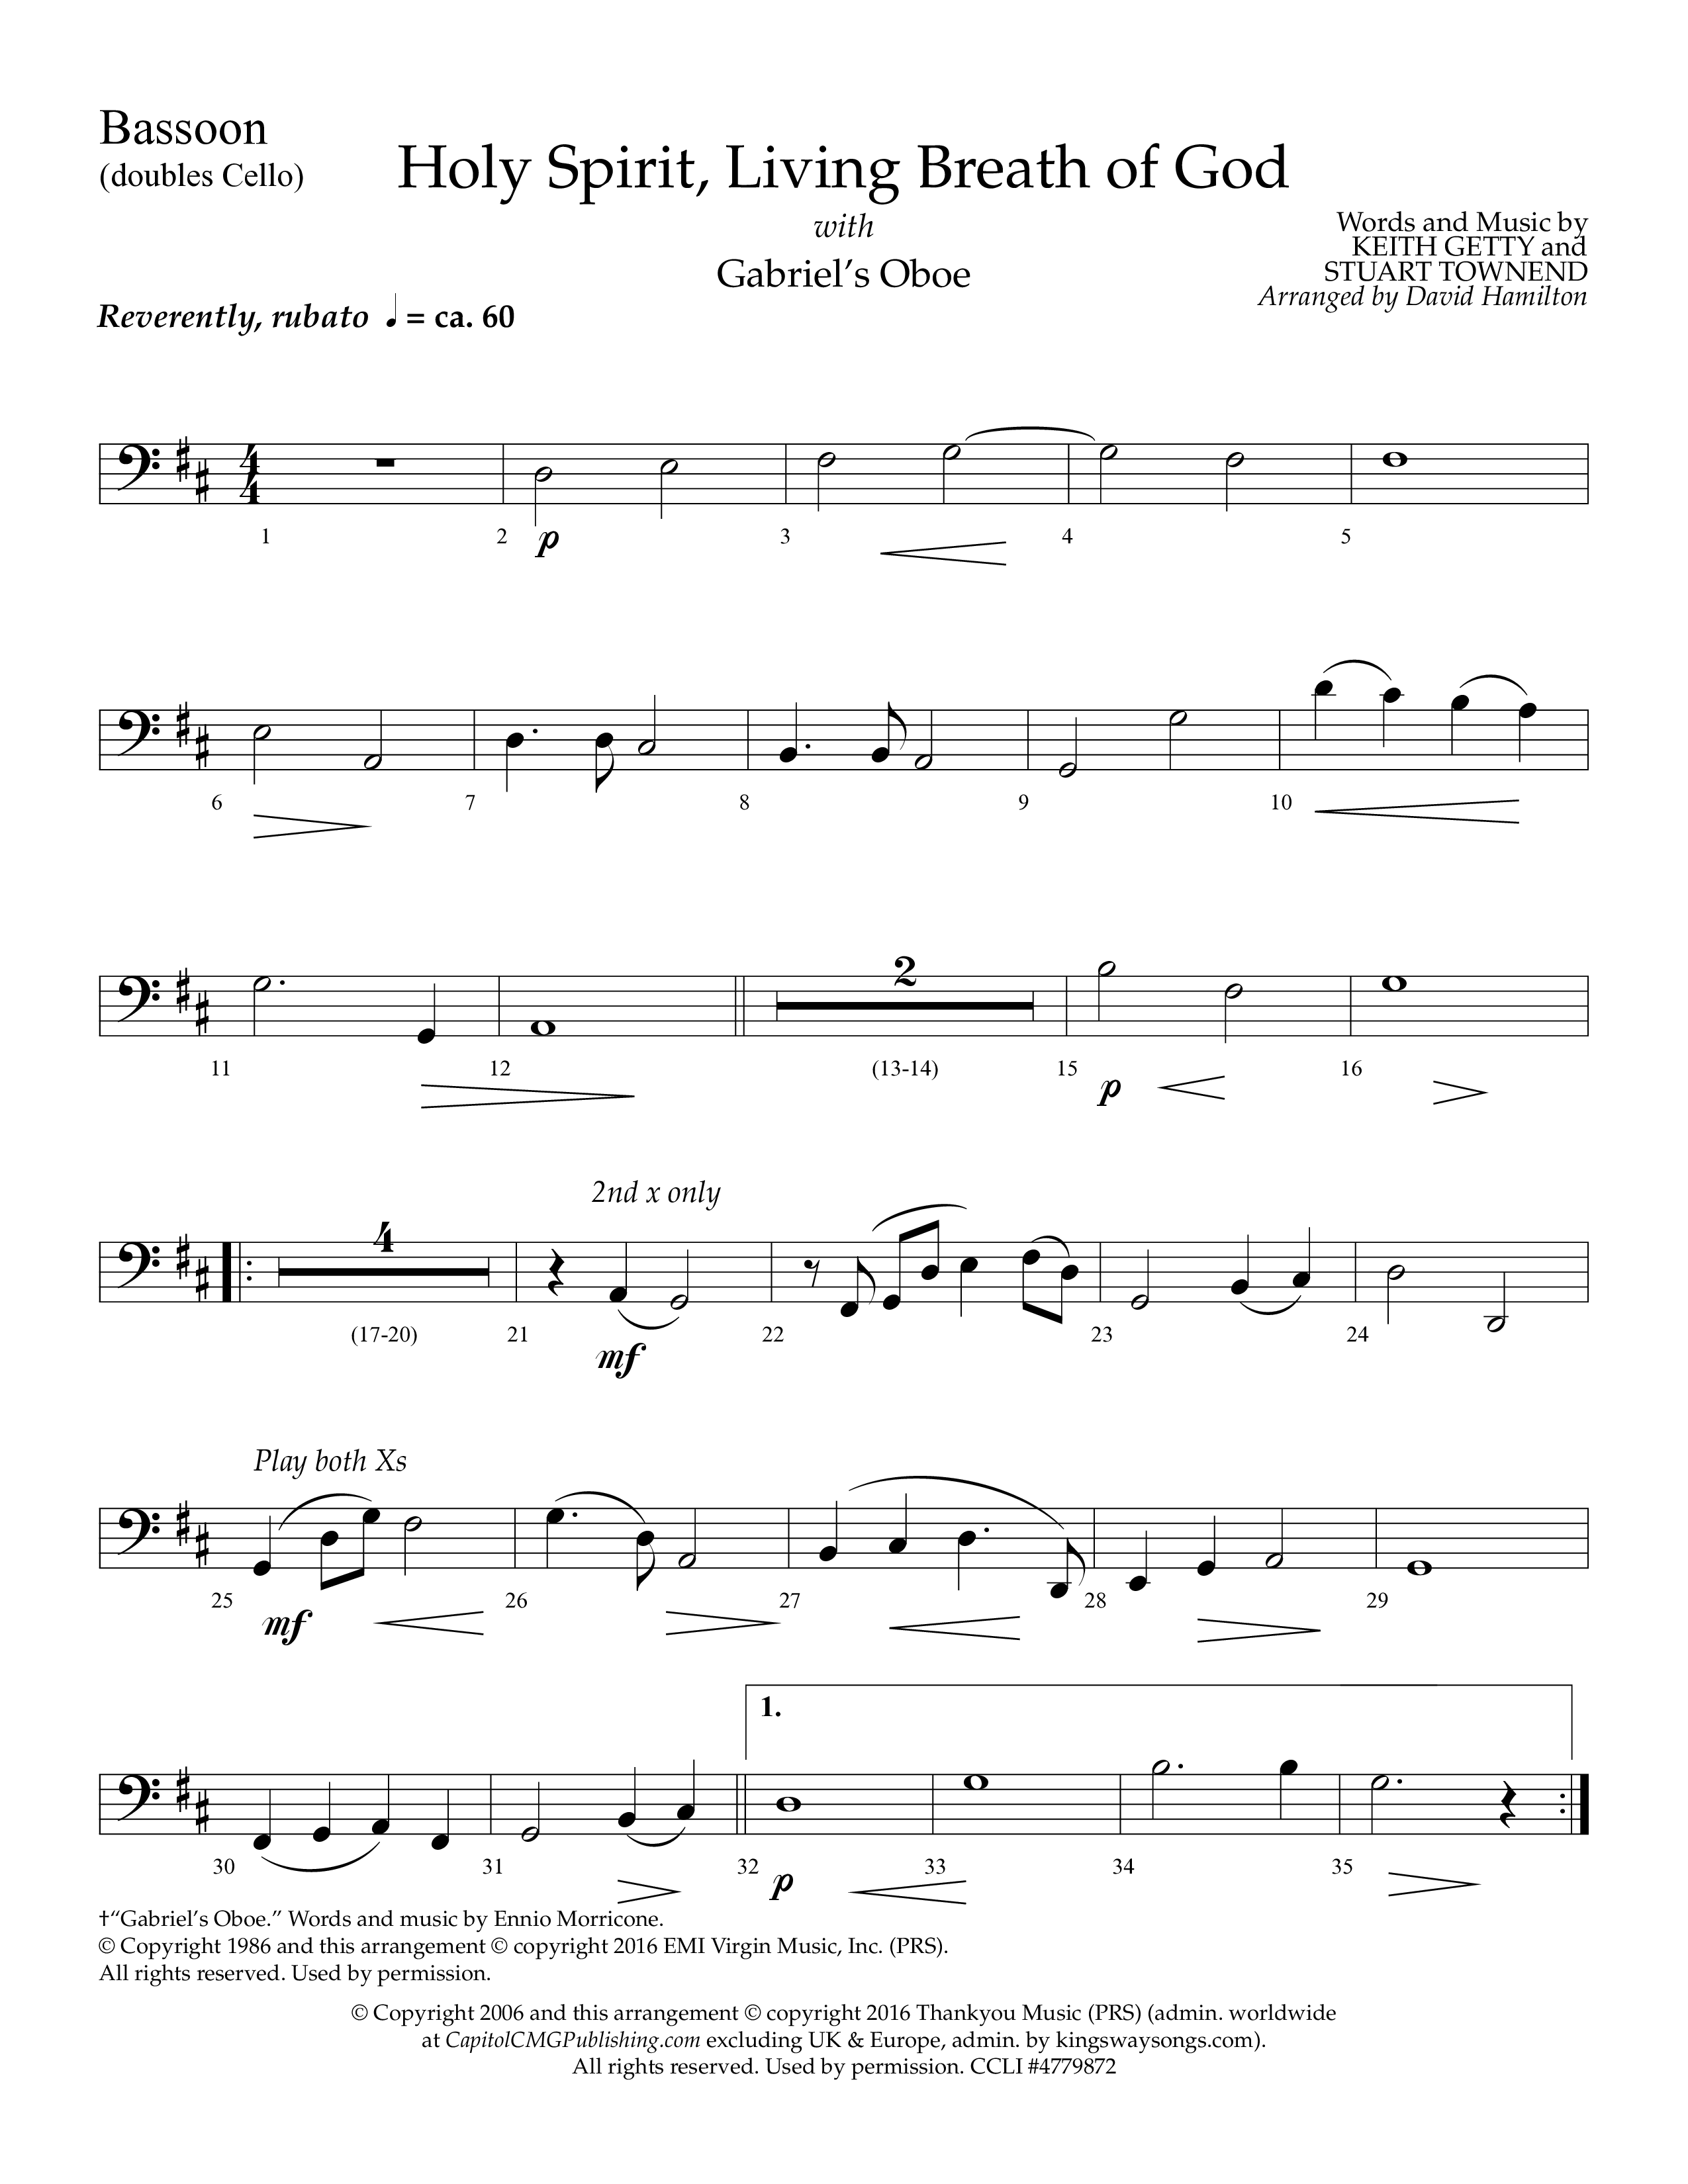 Holy Spirit Living Breath Of God (with Gabriel's Oboe) (Choral Anthem SATB) Bassoon (Lifeway Choral / Arr. David Hamilton)